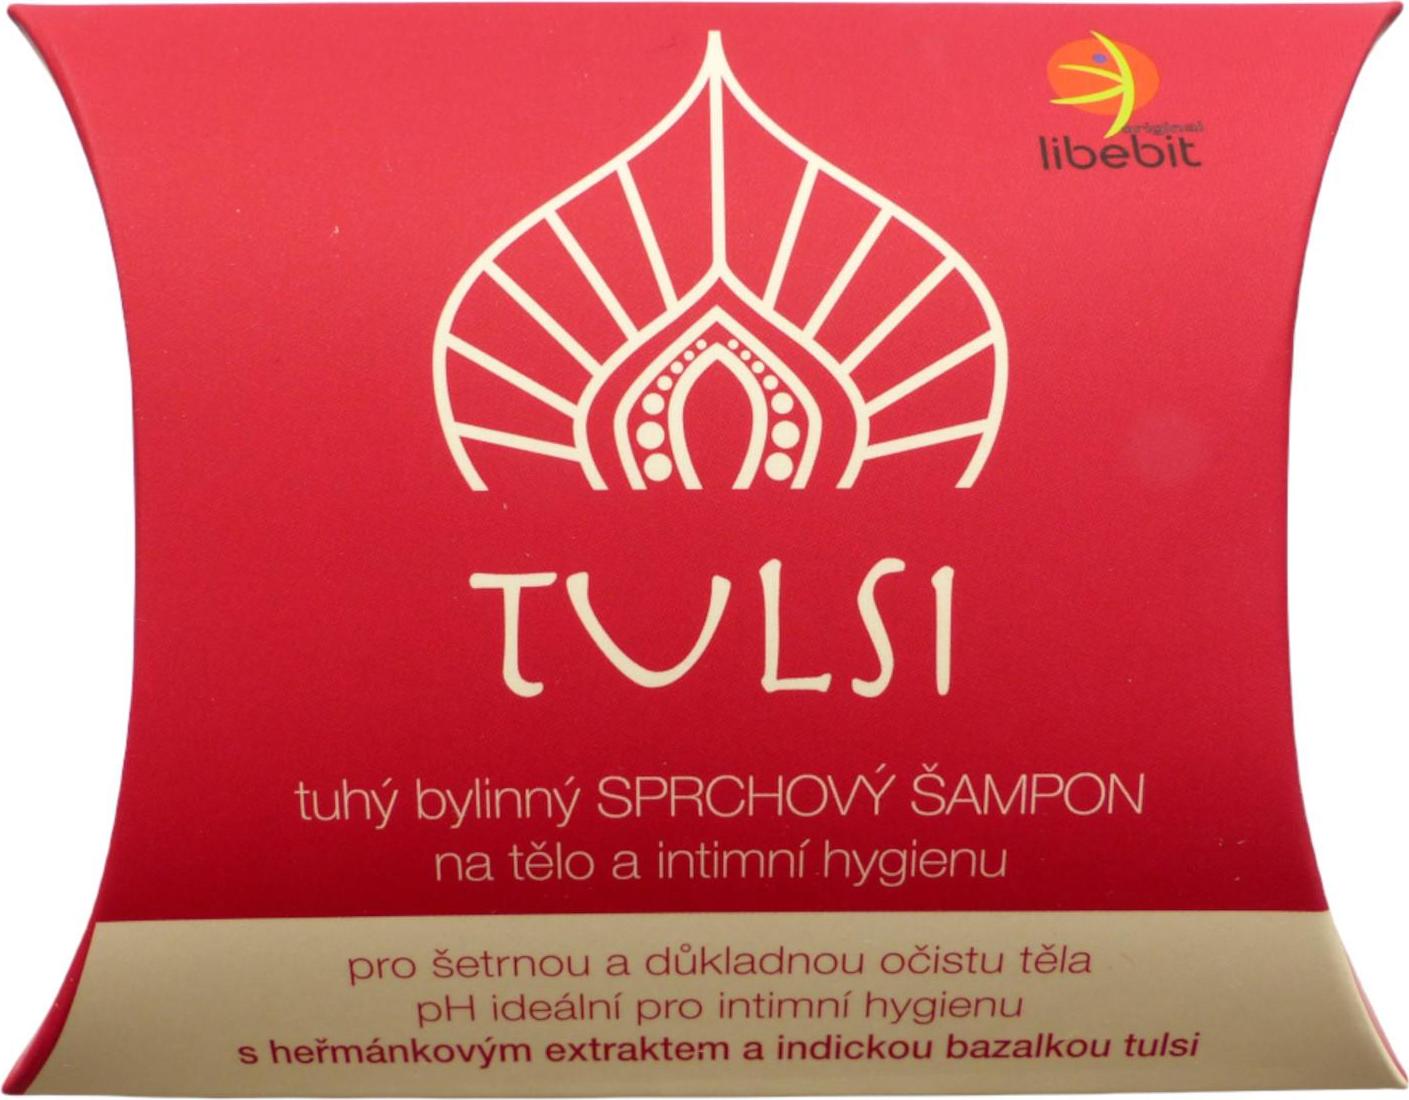 Libebit Tuhý bylinný sprchový šampon na tělo a intimní hygienu TULSI 95 g